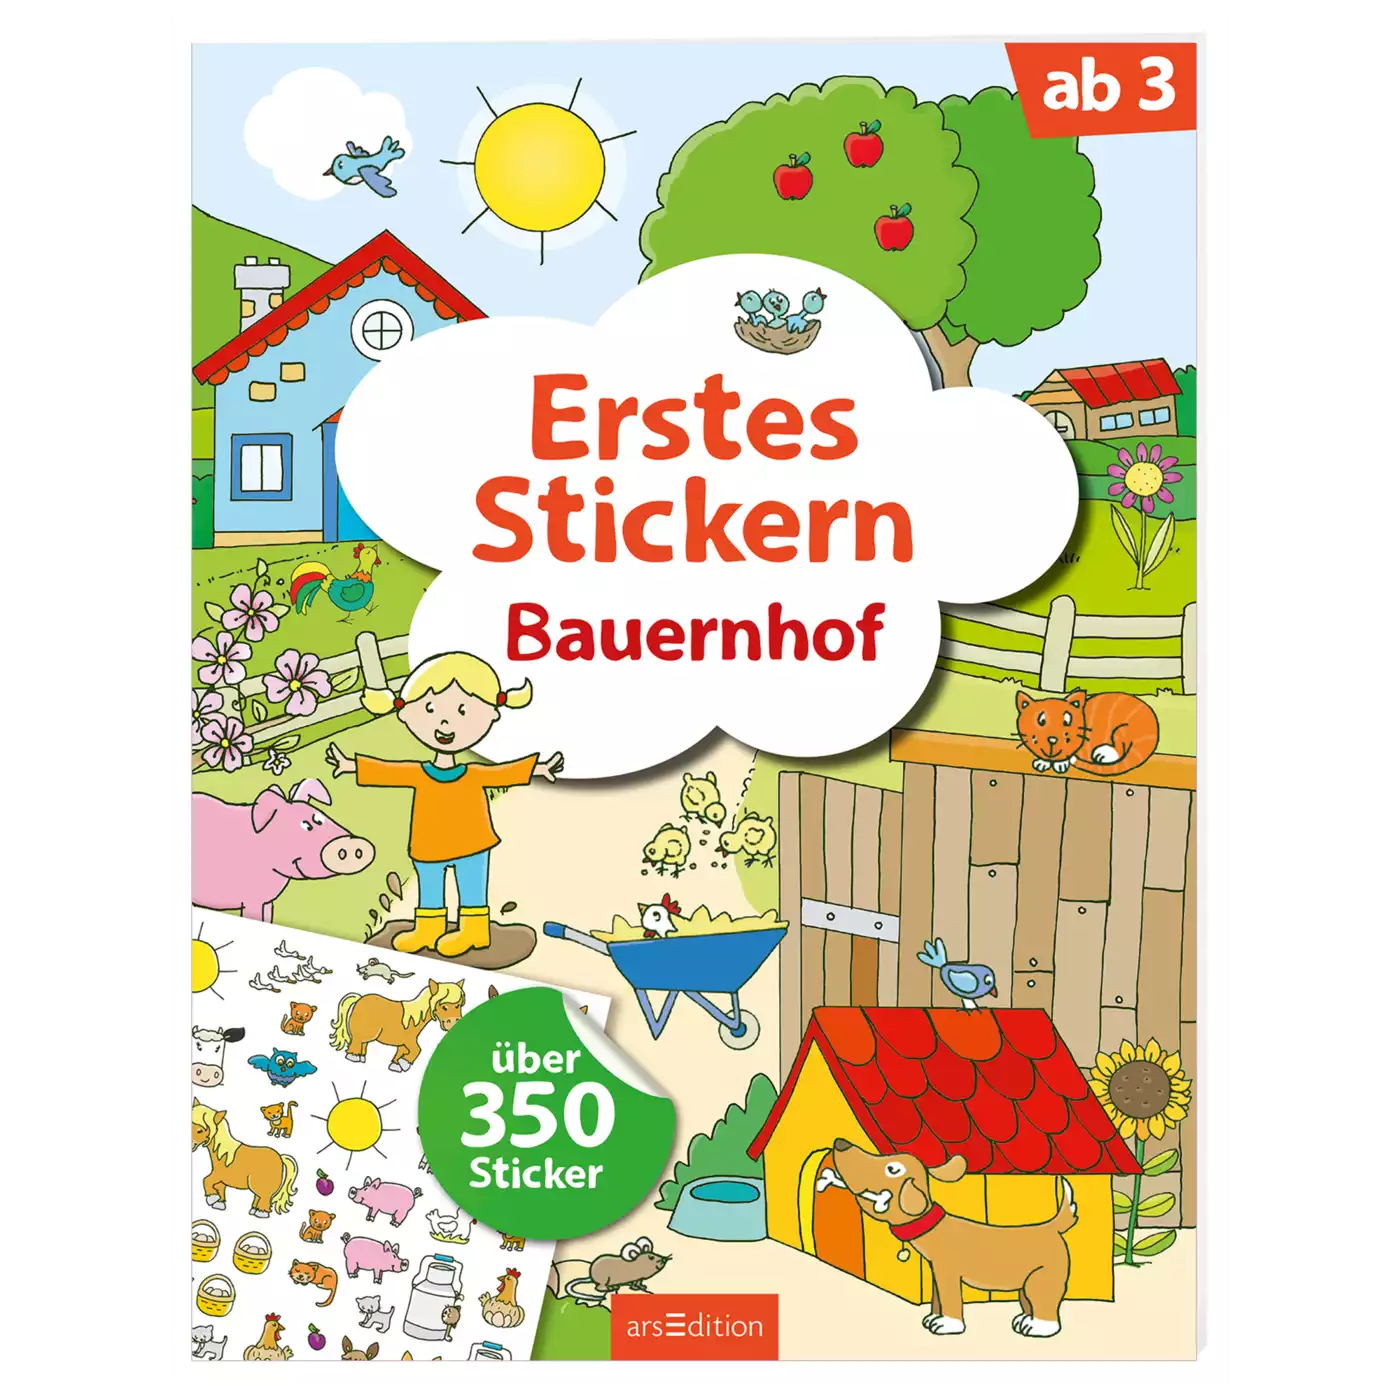 Erstes Stickern Bauernhof arsEdition 2000571971608 3